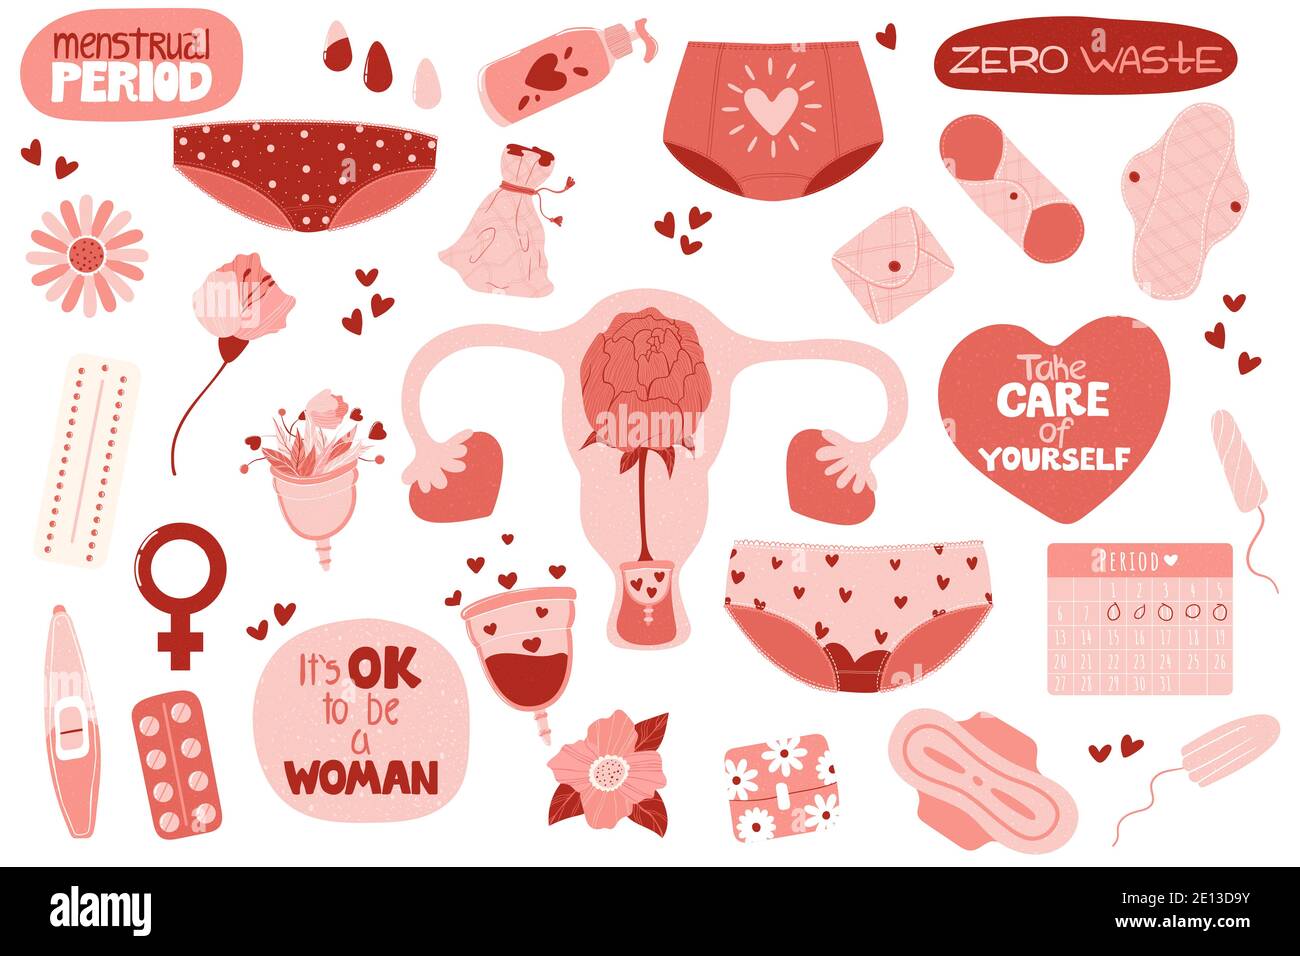 Menstruation eingestellt. Bündel von Menstruation, Periode, weibliche Gebärmutter, Null Abfall weibliche Hygiene-Produkte Aufkleber. Handgezeichnete Vektorgrafik in flacher Form Stock Vektor